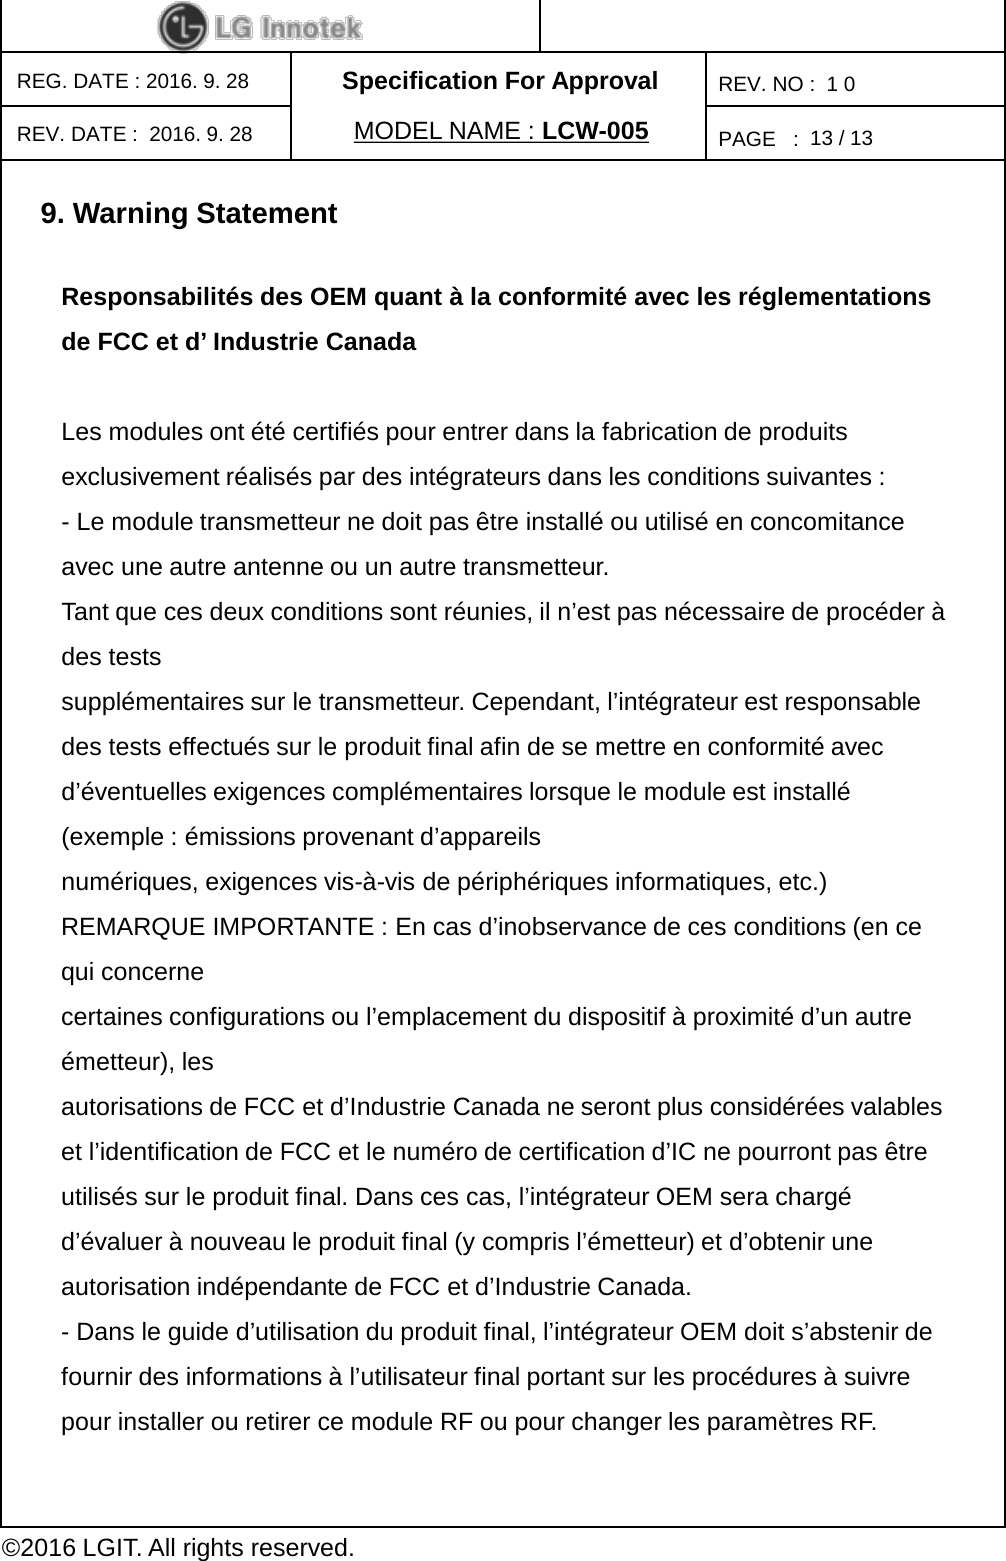 Specification For ApprovalPAGE   :REG. DATE : 2016. 9. 28MODEL NAME : LCW-005REV. NO :  1 0©2016 LGIT. All rights reserved.13 / 13REV. DATE :  2016. 9. 289. Warning StatementResponsabilités des OEM quant à la conformité avec les réglementations de FCC et d’ Industrie Canada Les modules ont été certifiés pour entrer dans la fabrication de produits exclusivement réalisés par des intégrateurs dans les conditions suivantes : -Le module transmetteur ne doit pas être installé ou utilisé en concomitance avec une autre antenne ou un autre transmetteur. Tant que ces deux conditions sont réunies, il n’est pas nécessaire de procéder à des tests supplémentaires sur le transmetteur. Cependant, l’intégrateur est responsable des tests effectués sur le produit final afin de se mettre en conformité avec d’éventuelles exigences complémentaires lorsque le module est installé (exemple : émissions provenant d’appareils numériques, exigences vis-à-vis de périphériques informatiques, etc.) REMARQUE IMPORTANTE : En cas d’inobservance de ces conditions (en ce qui concerne certaines configurations ou l’emplacement du dispositif à proximité d’un autre émetteur), les autorisations de FCC et d’Industrie Canada ne seront plus considérées valables et l’identification de FCC et le numéro de certification d’IC ne pourront pas être utilisés sur le produit final. Dans ces cas, l’intégrateur OEM sera chargé d’évaluer à nouveau le produit final (y compris l’émetteur) et d’obtenir une autorisation indépendante de FCC et d’Industrie Canada. -Dans le guide d’utilisation du produit final, l’intégrateur OEM doit s’abstenir de fournir des informations à l’utilisateur final portant sur les procédures à suivre pour installer ou retirer ce module RF ou pour changer les paramètres RF. 